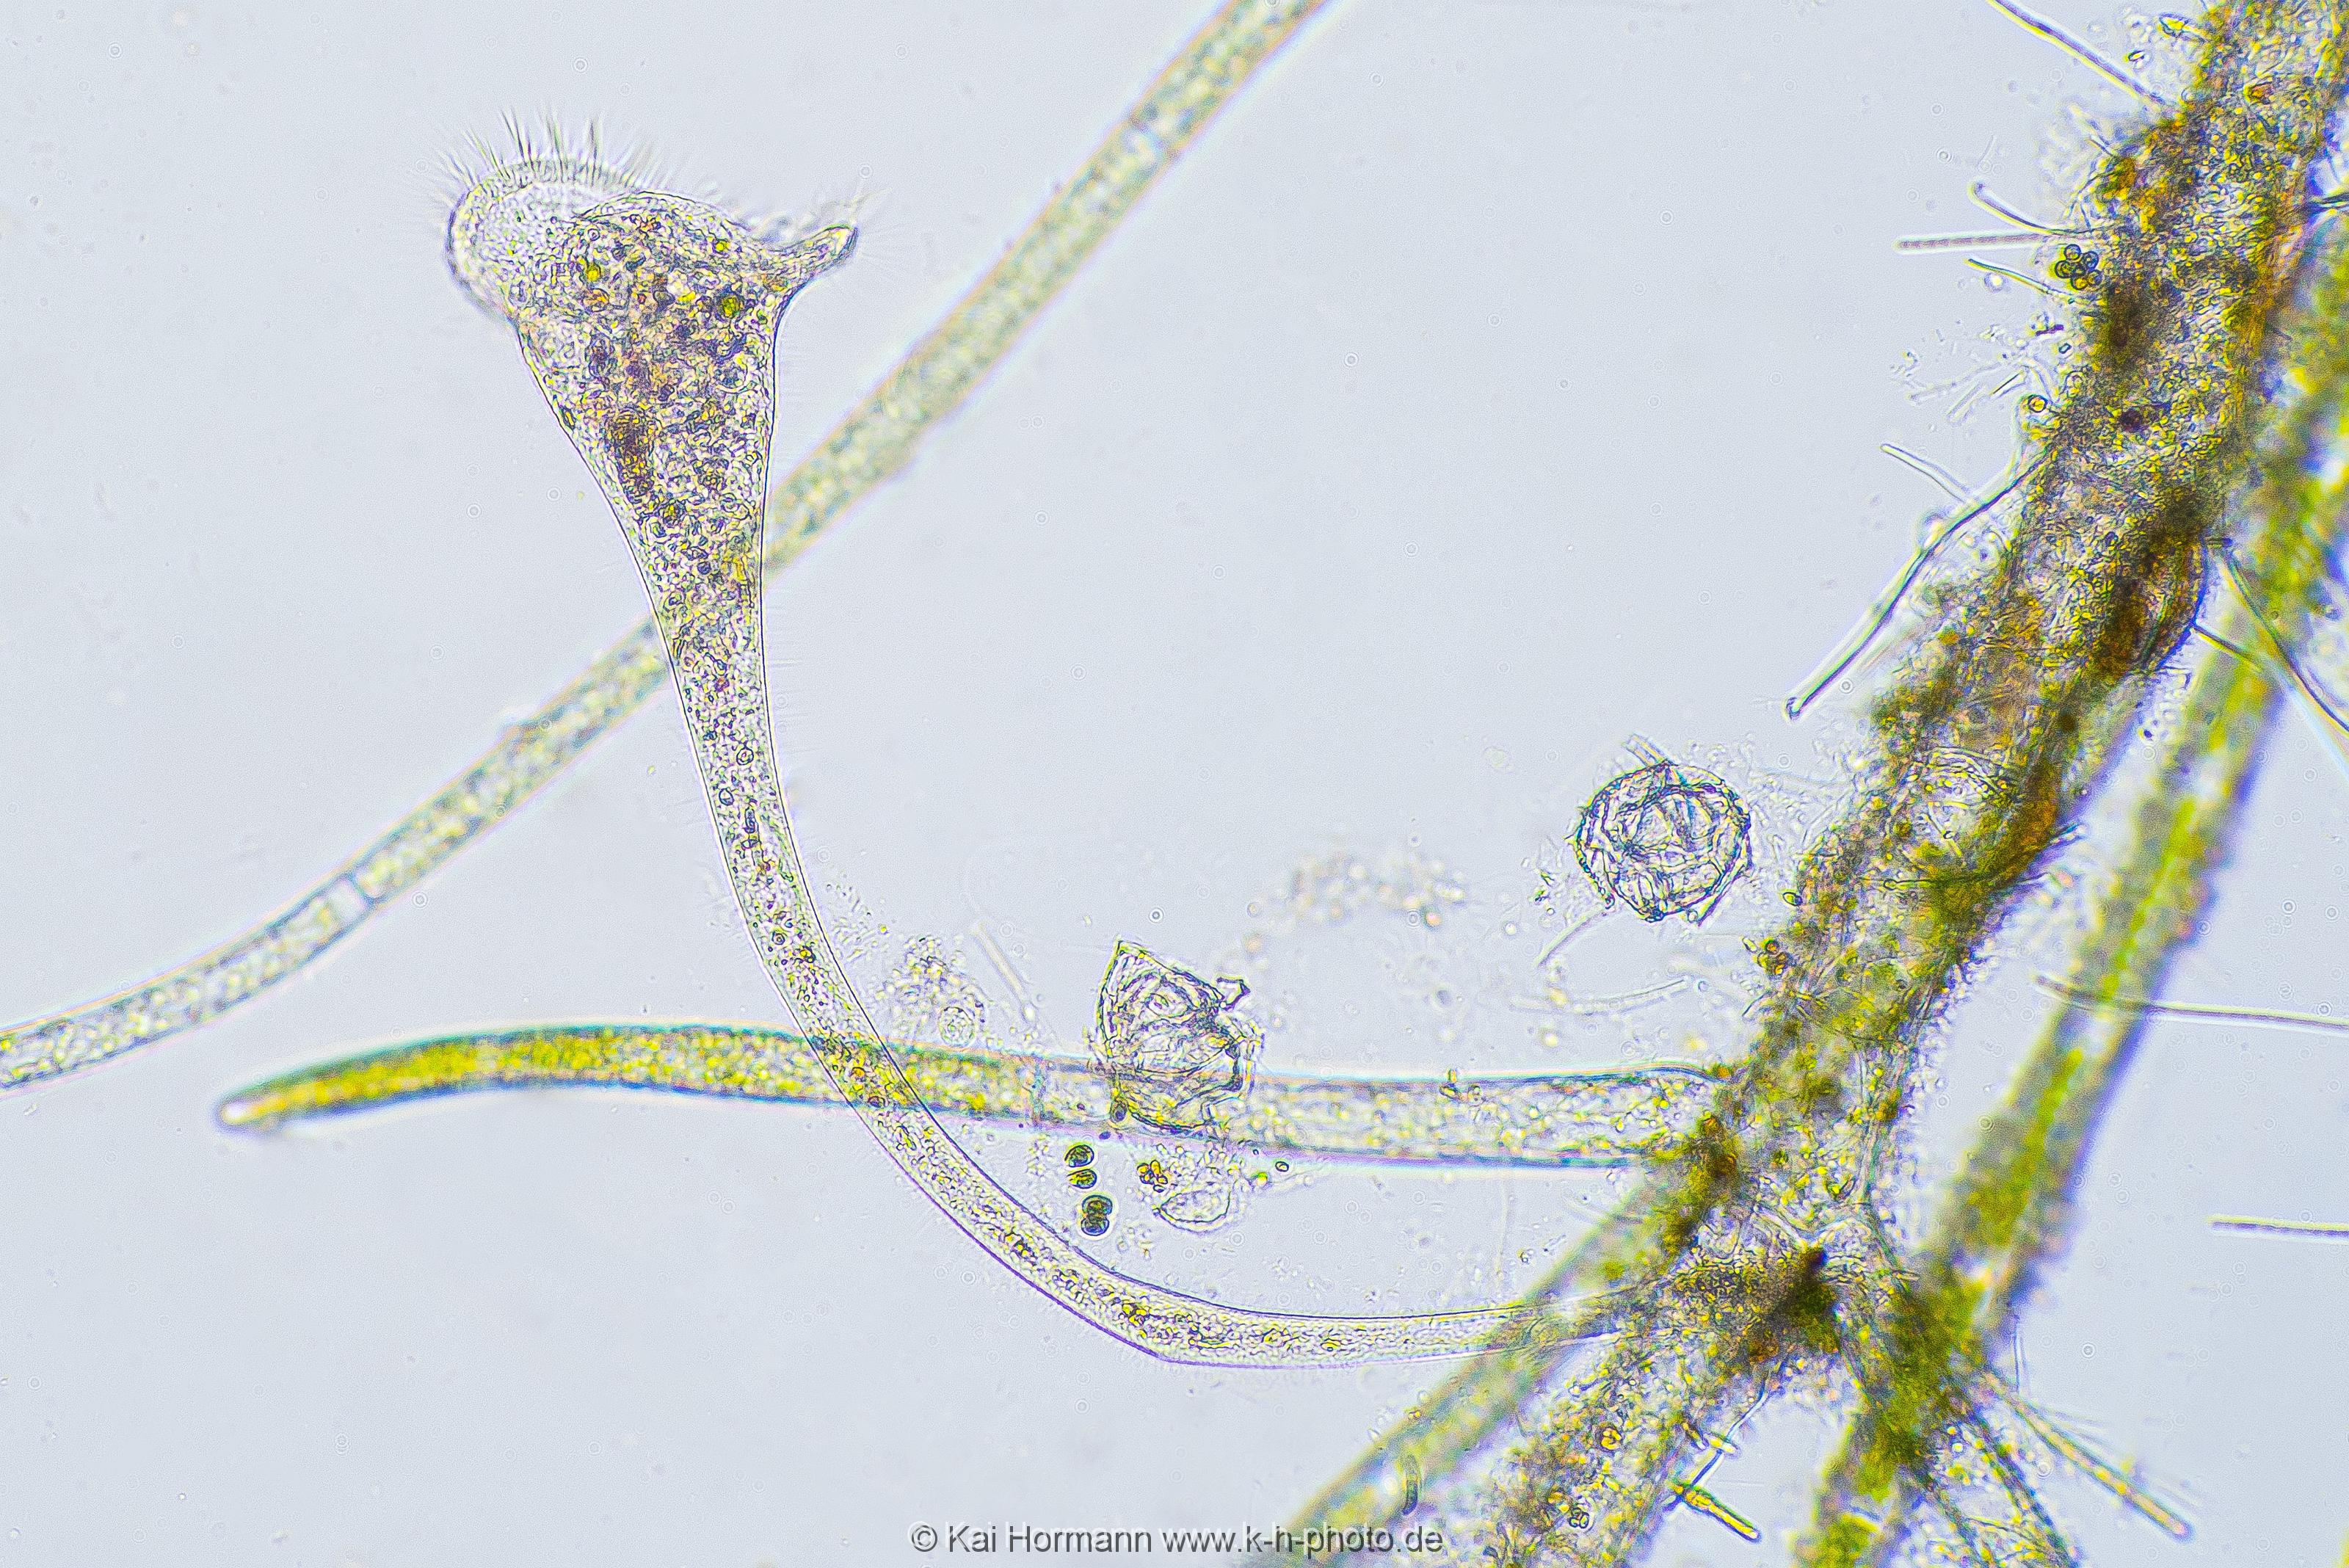 Trompetentierchen Mikrofotografie: Mikroskopische Aufnahmen von Einzellern, Algen und Kleinstlebewesen.